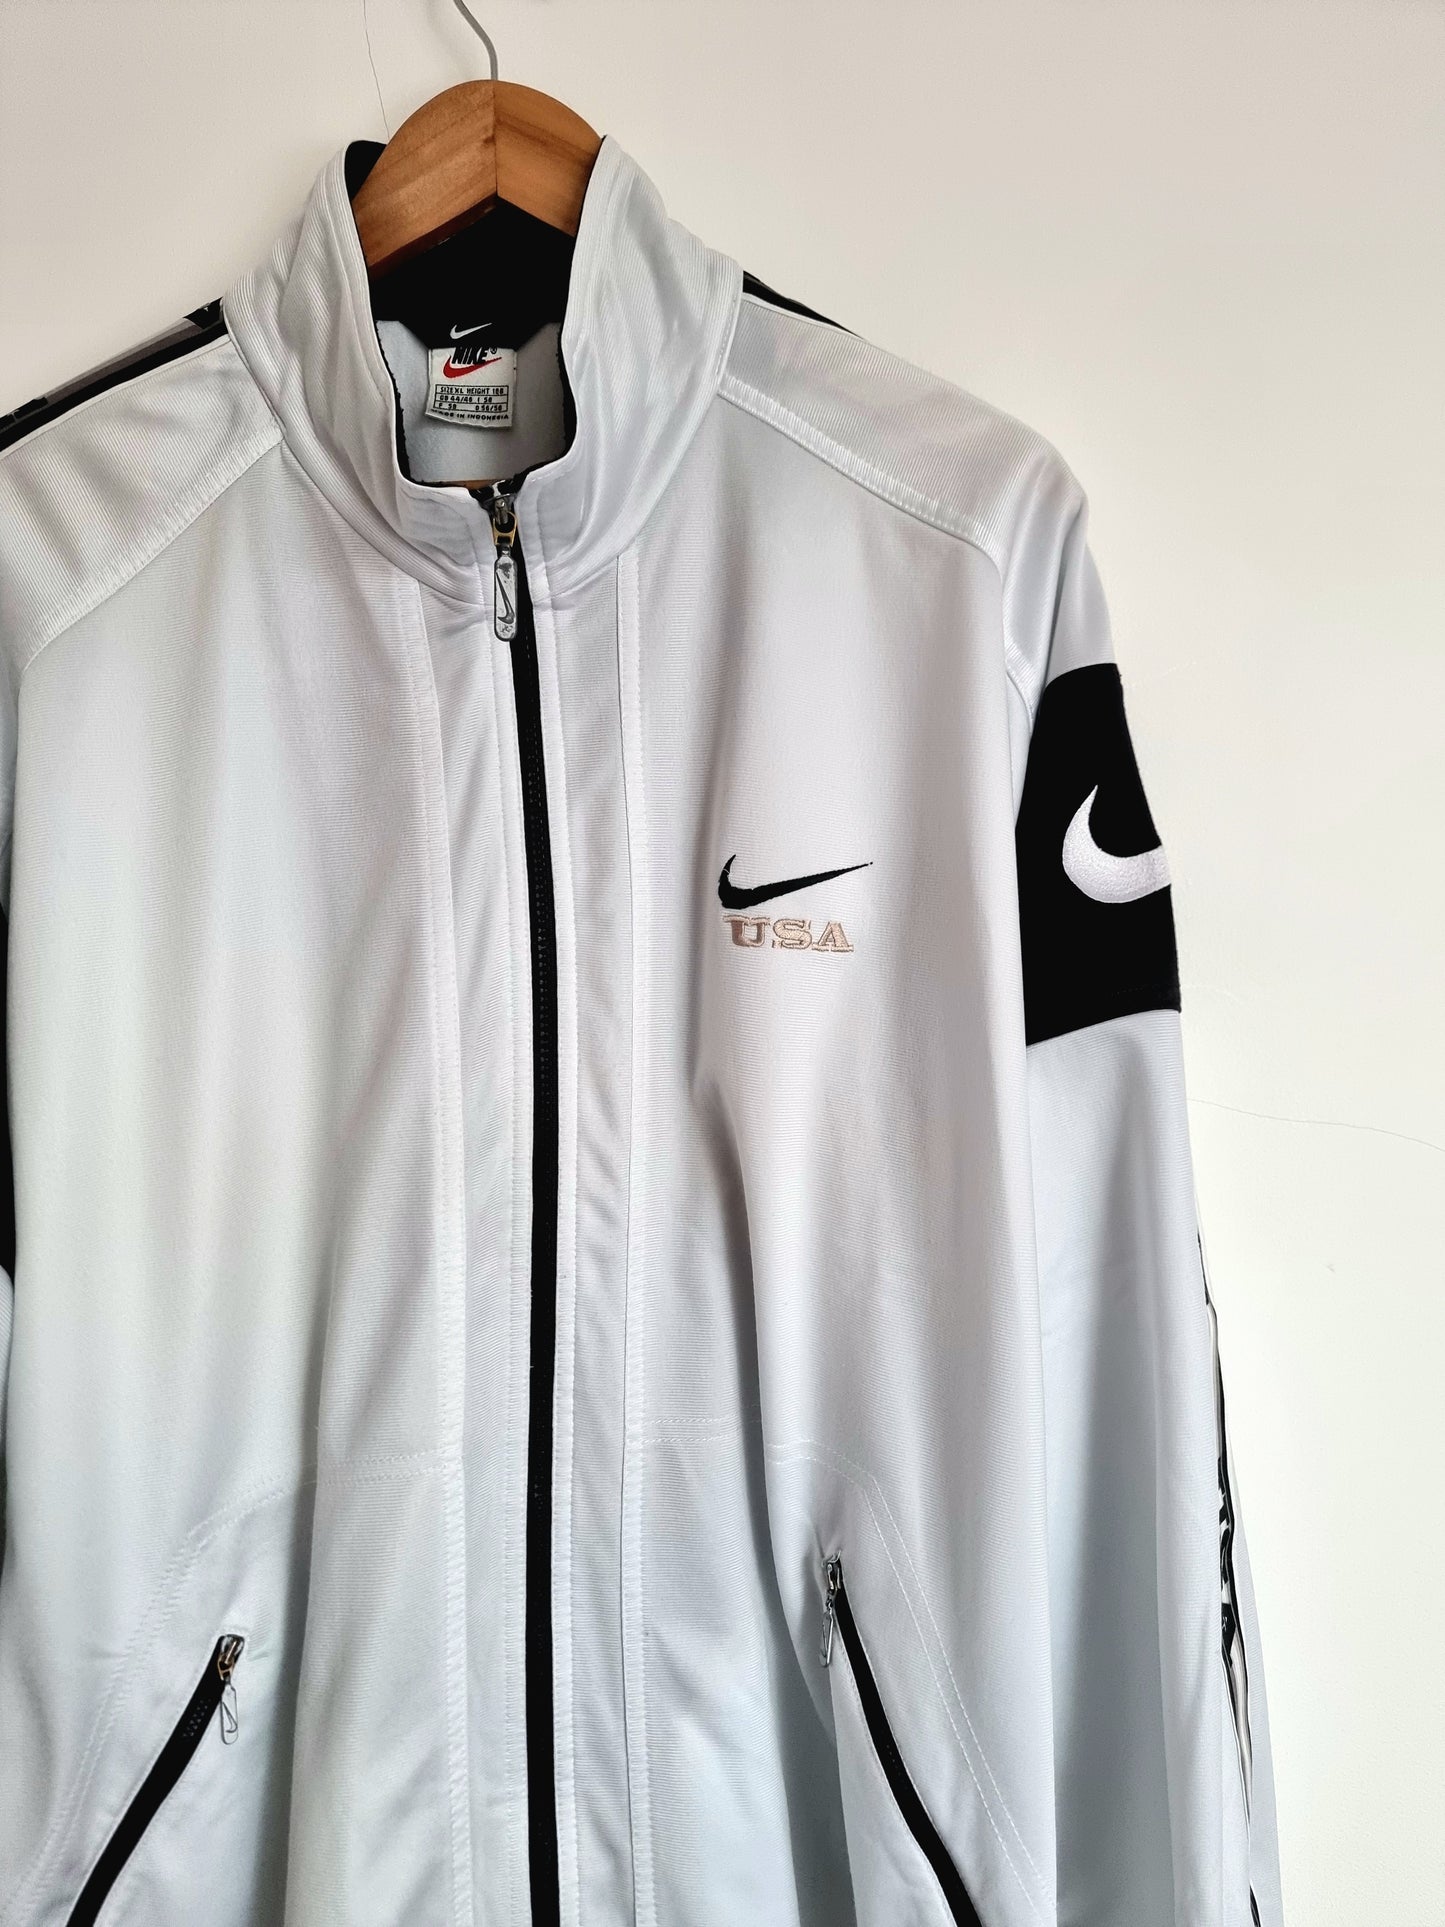 Nike USA 90s Track Jacket XL